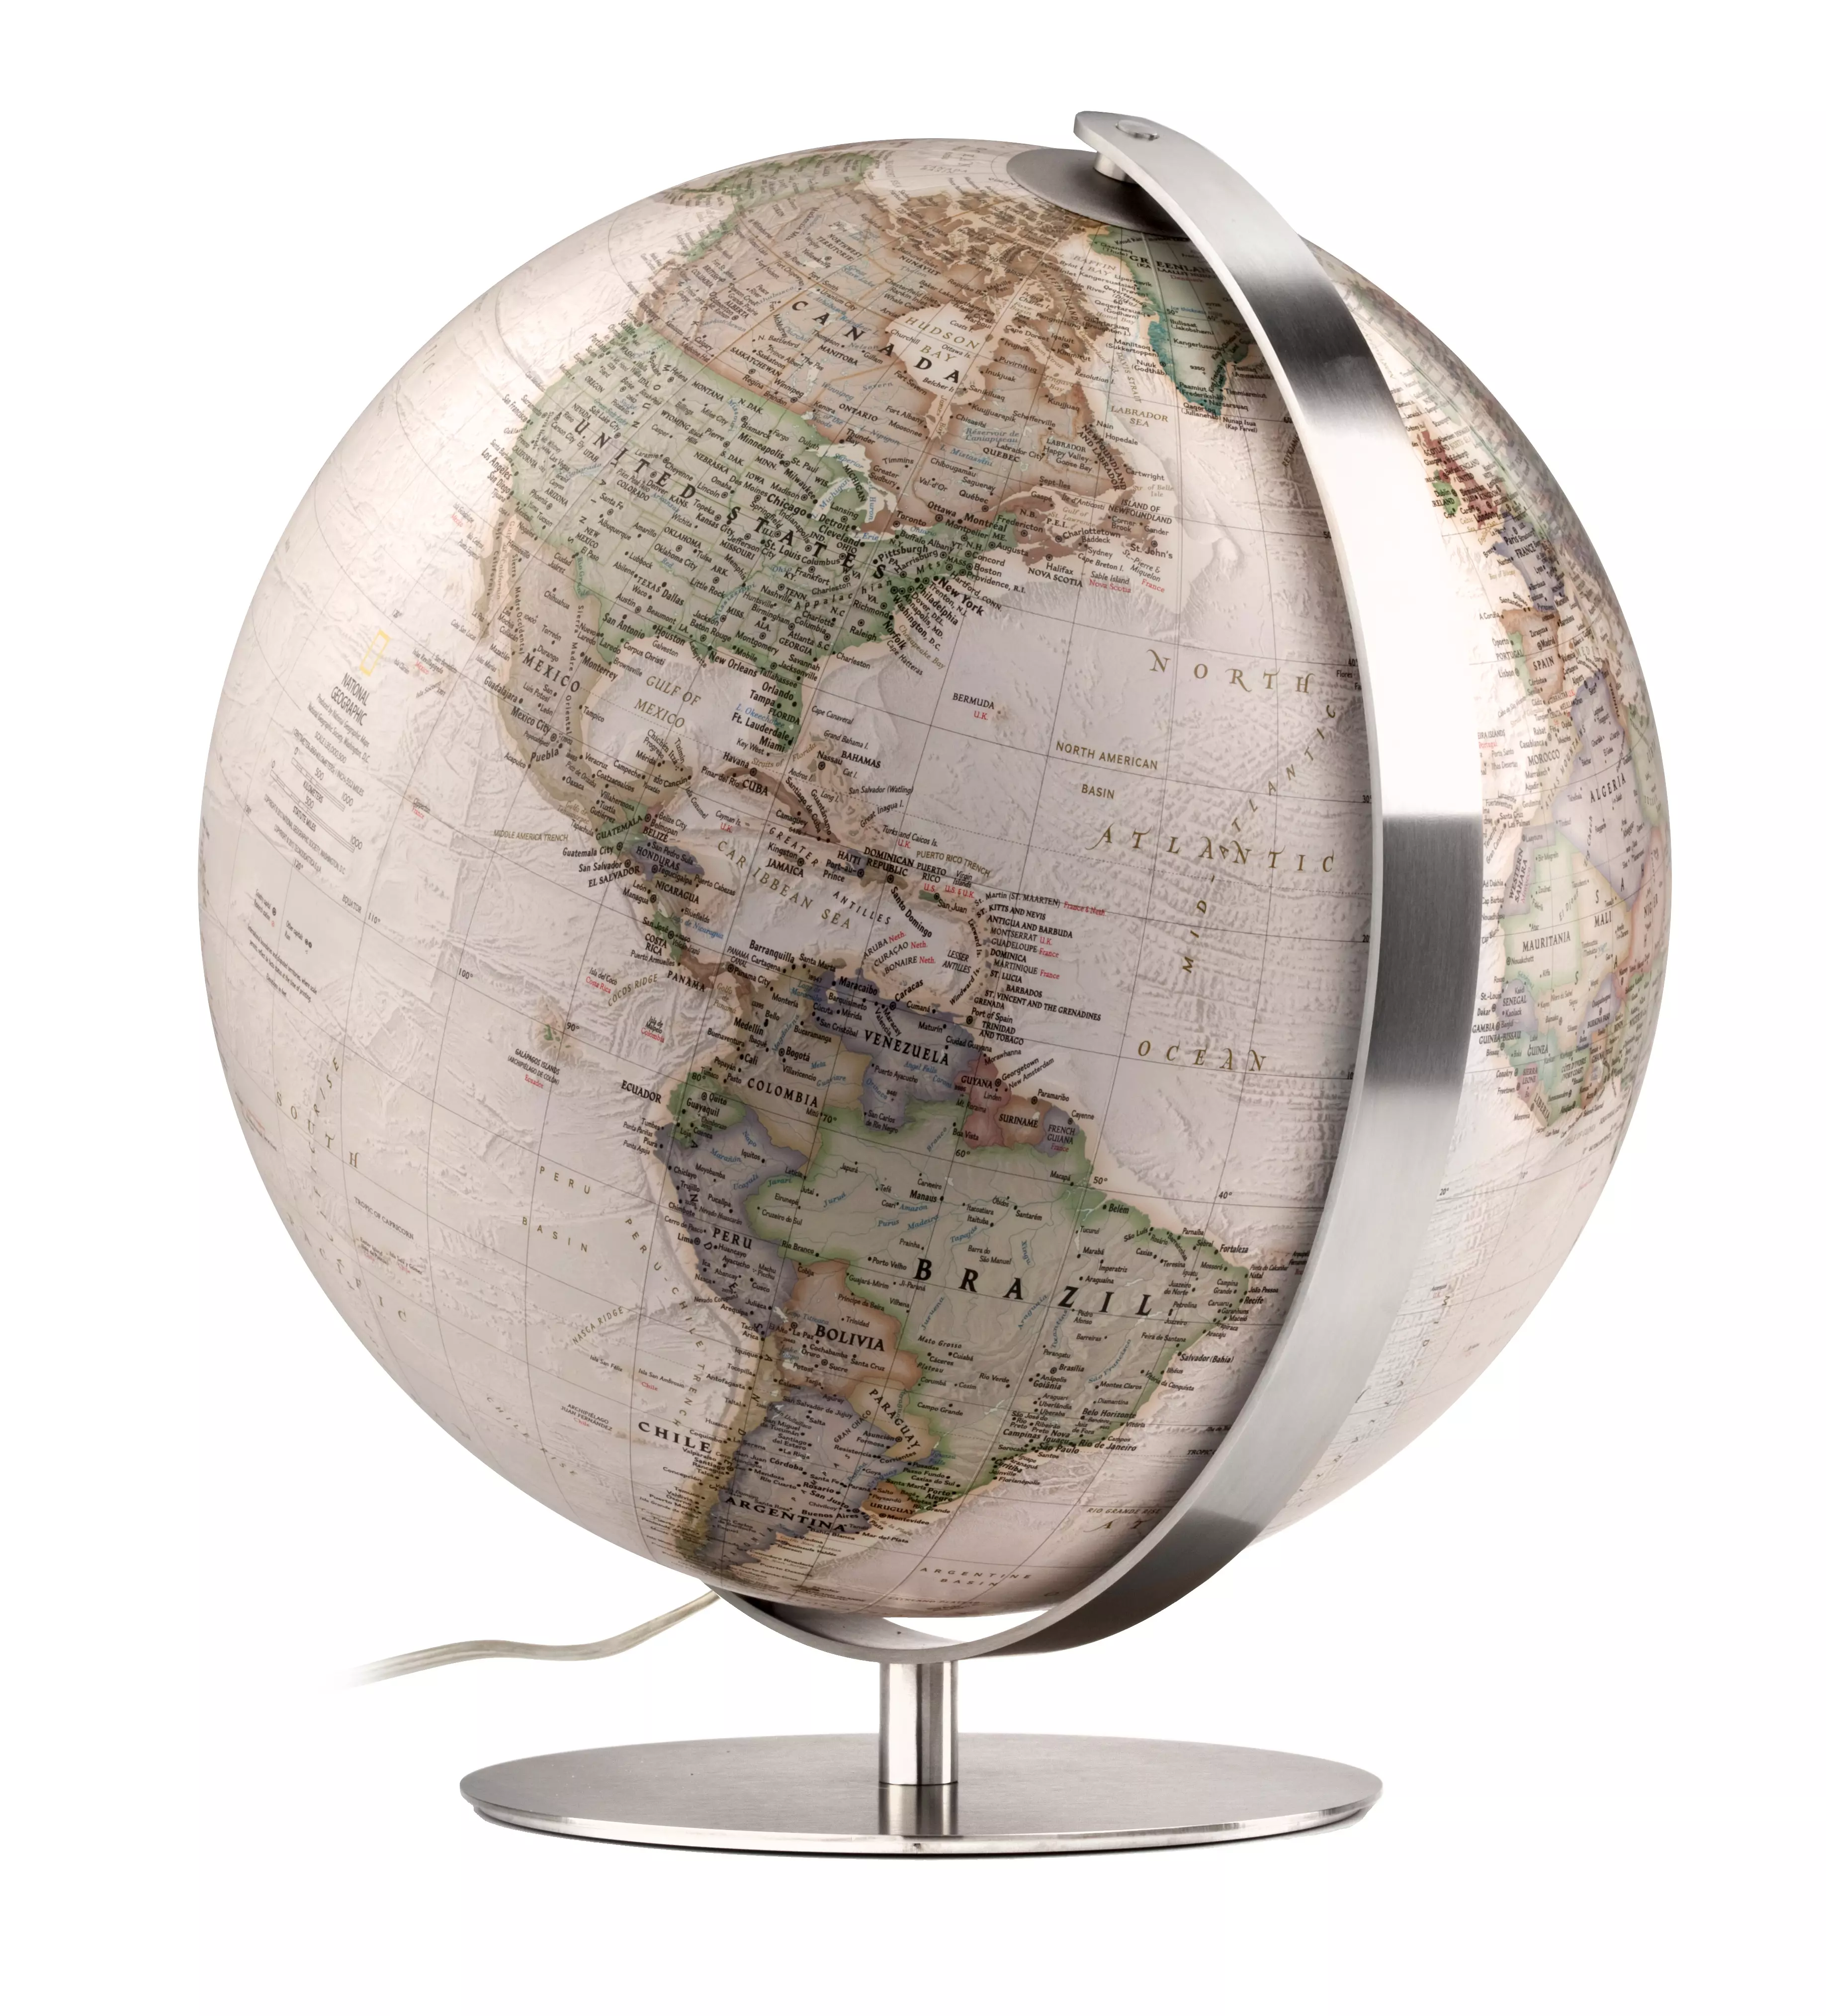 Glob pamantesc Extra Executive, 37 cm -artizanala, talpa din metal, National Geographic (limba engleza)